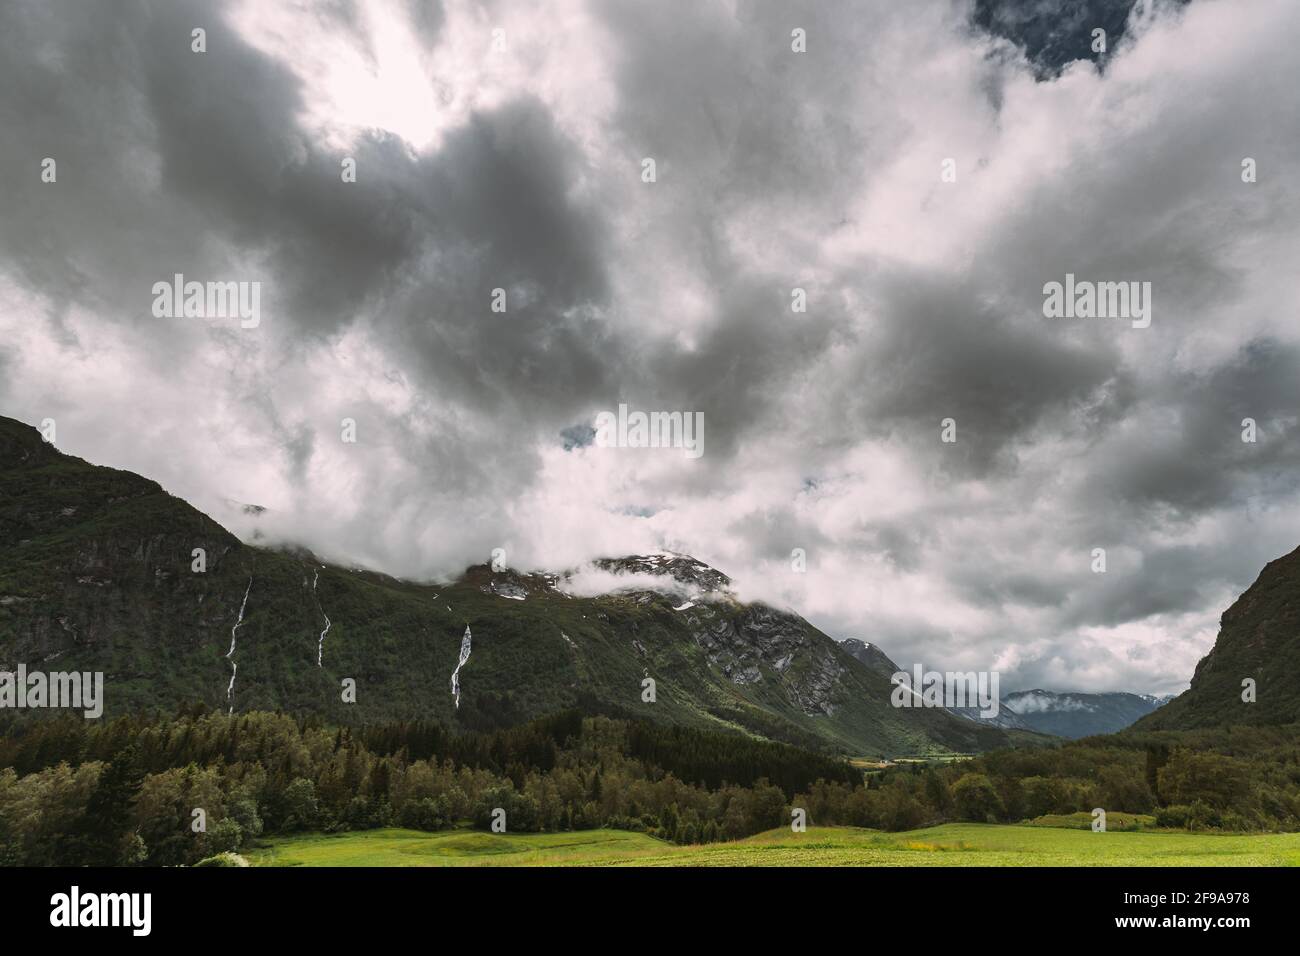 Stardalen, Skei Jolster, parc national de Jostedalsbreen, Norvège. Cascade dans un paysage norvégien d'été. Concept de prévision météorologique Banque D'Images